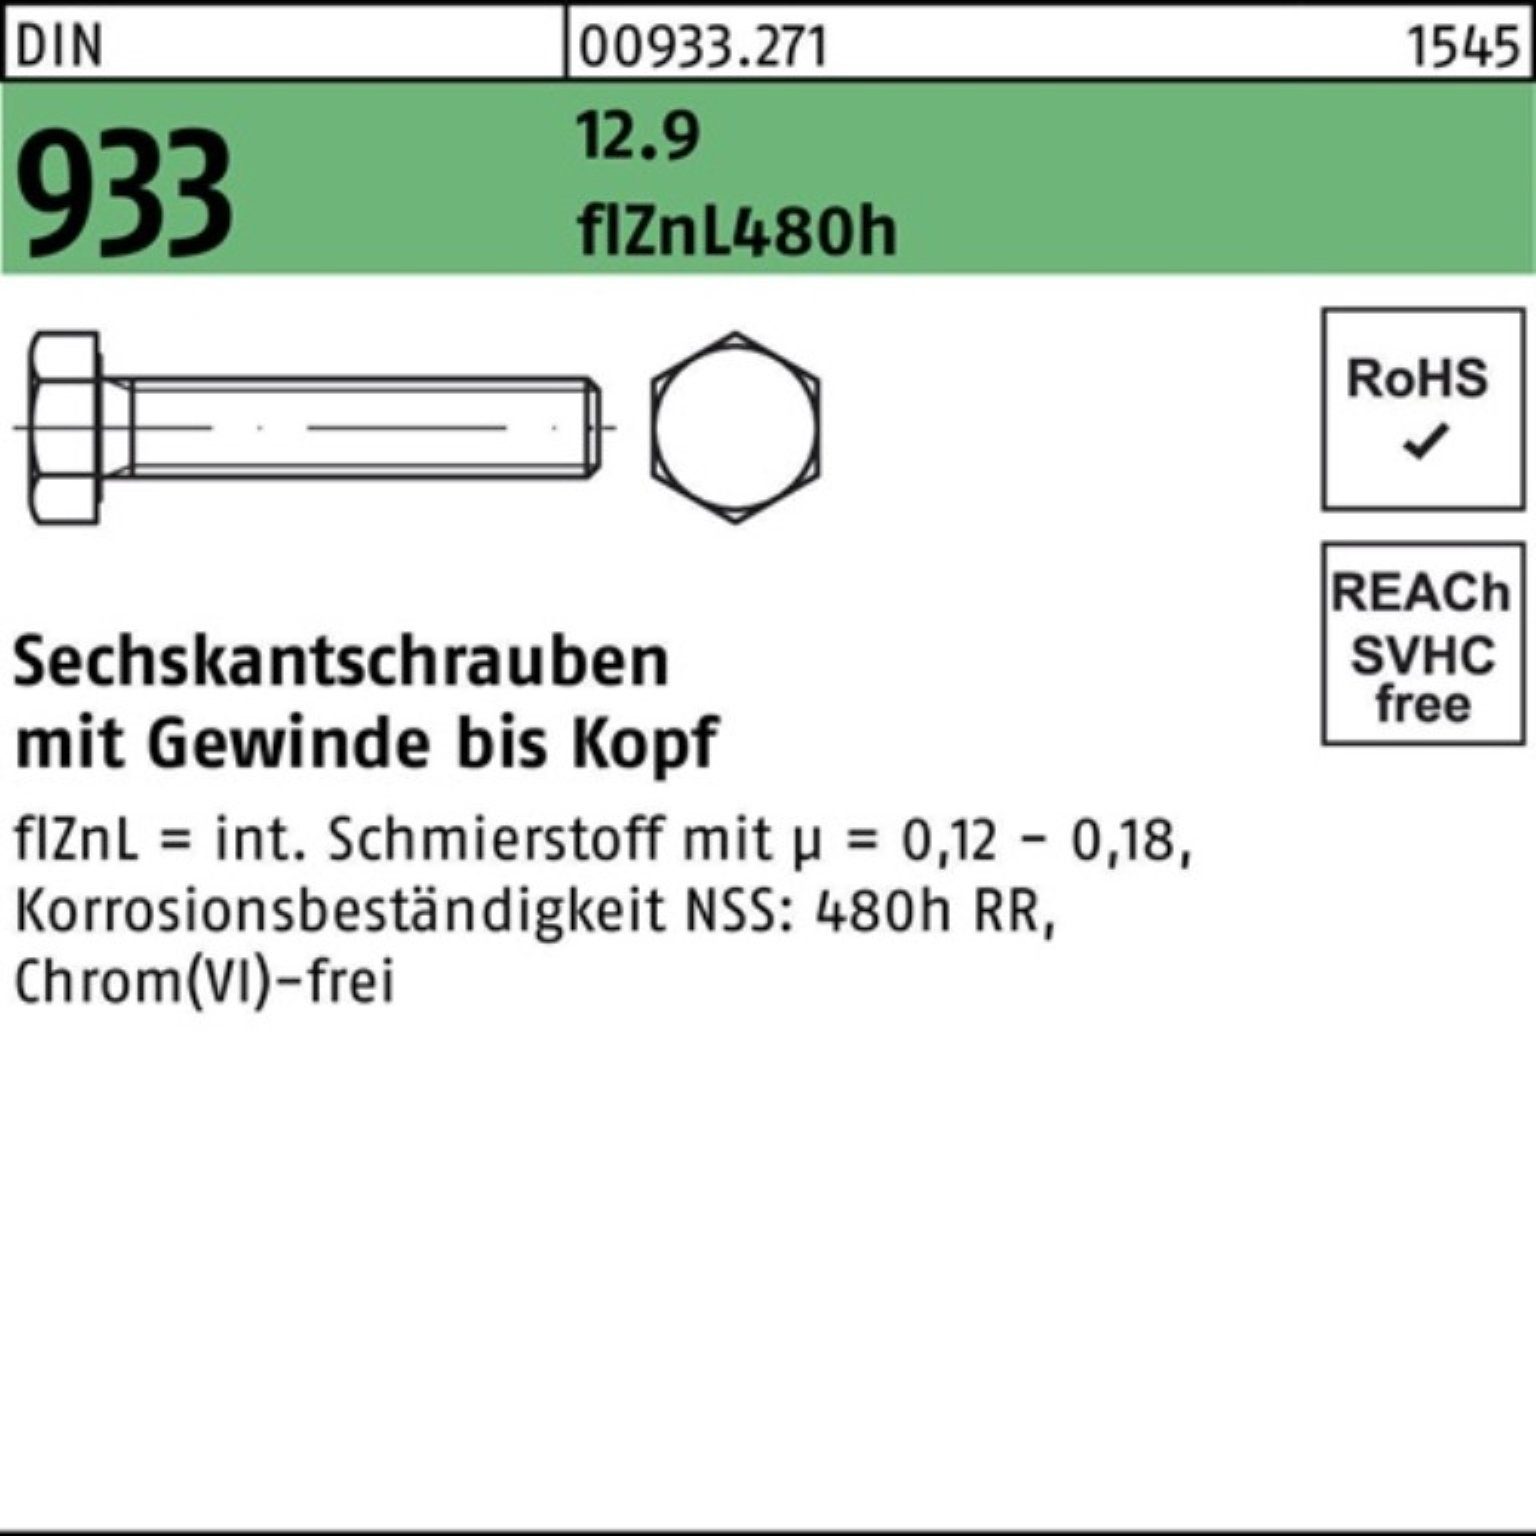 Reyher Sechskantschraube 200er Pack Sechskantschraube DIN 933 16 M8x 480h 12.9 VG zinklam flZnL